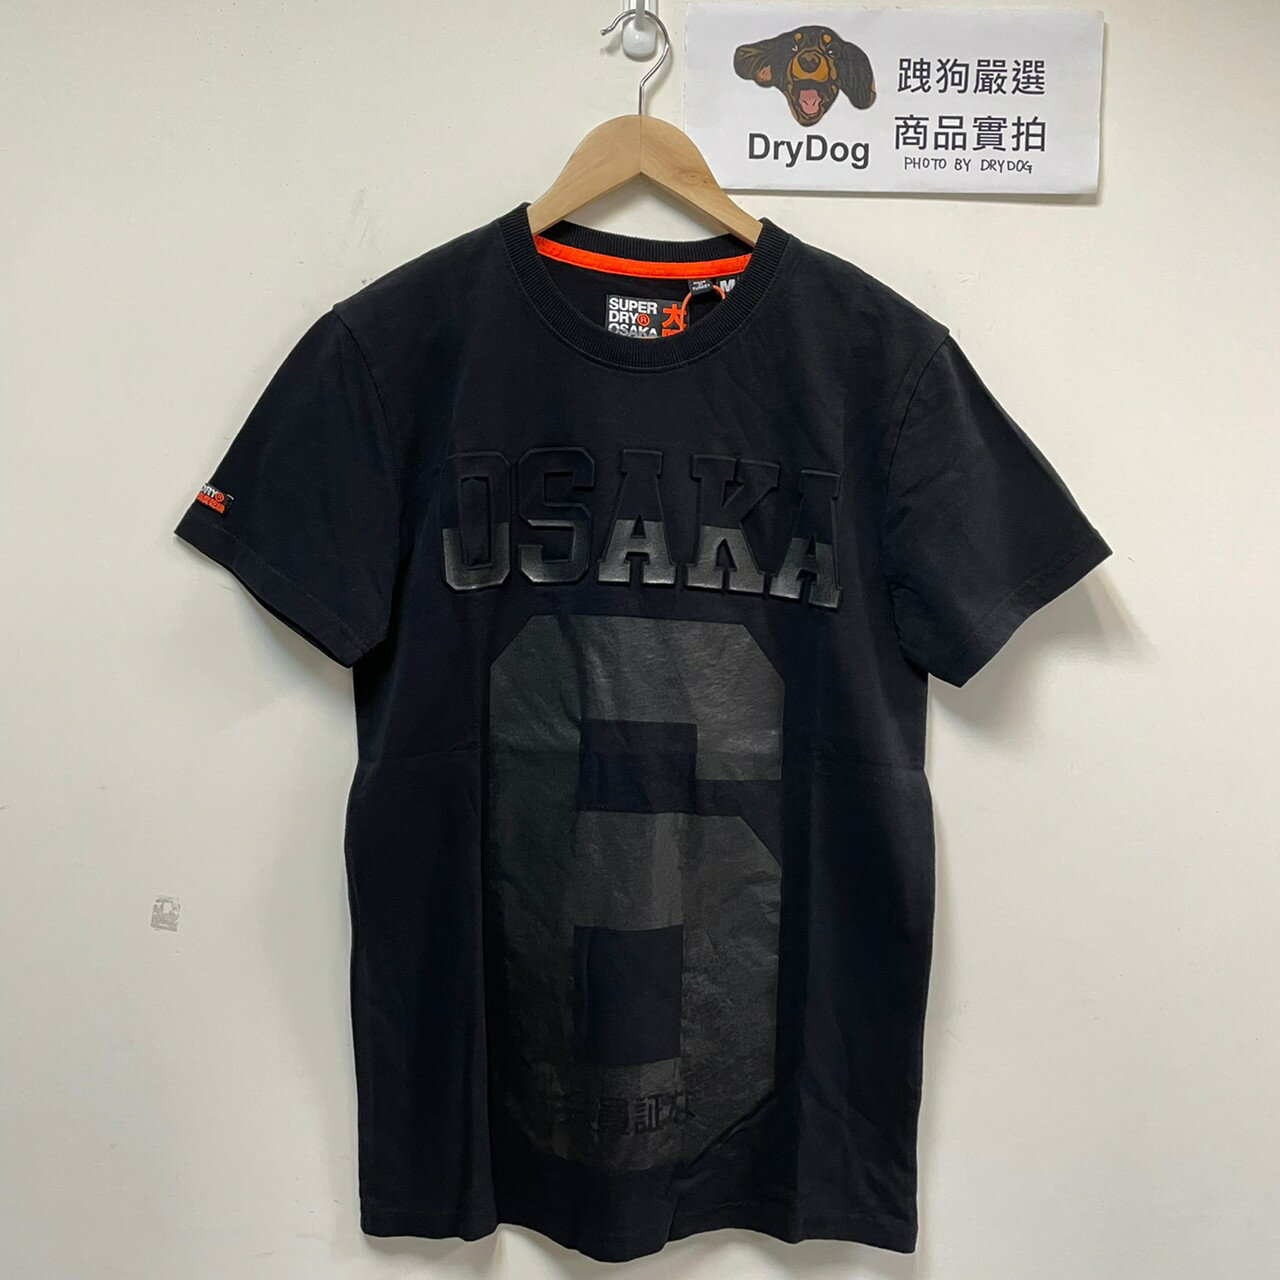 跩狗嚴選 極度乾燥 Superdry Osaka 經典 T-shirt 重磅 純棉 短袖 短T 黑色 壓印Logo T恤